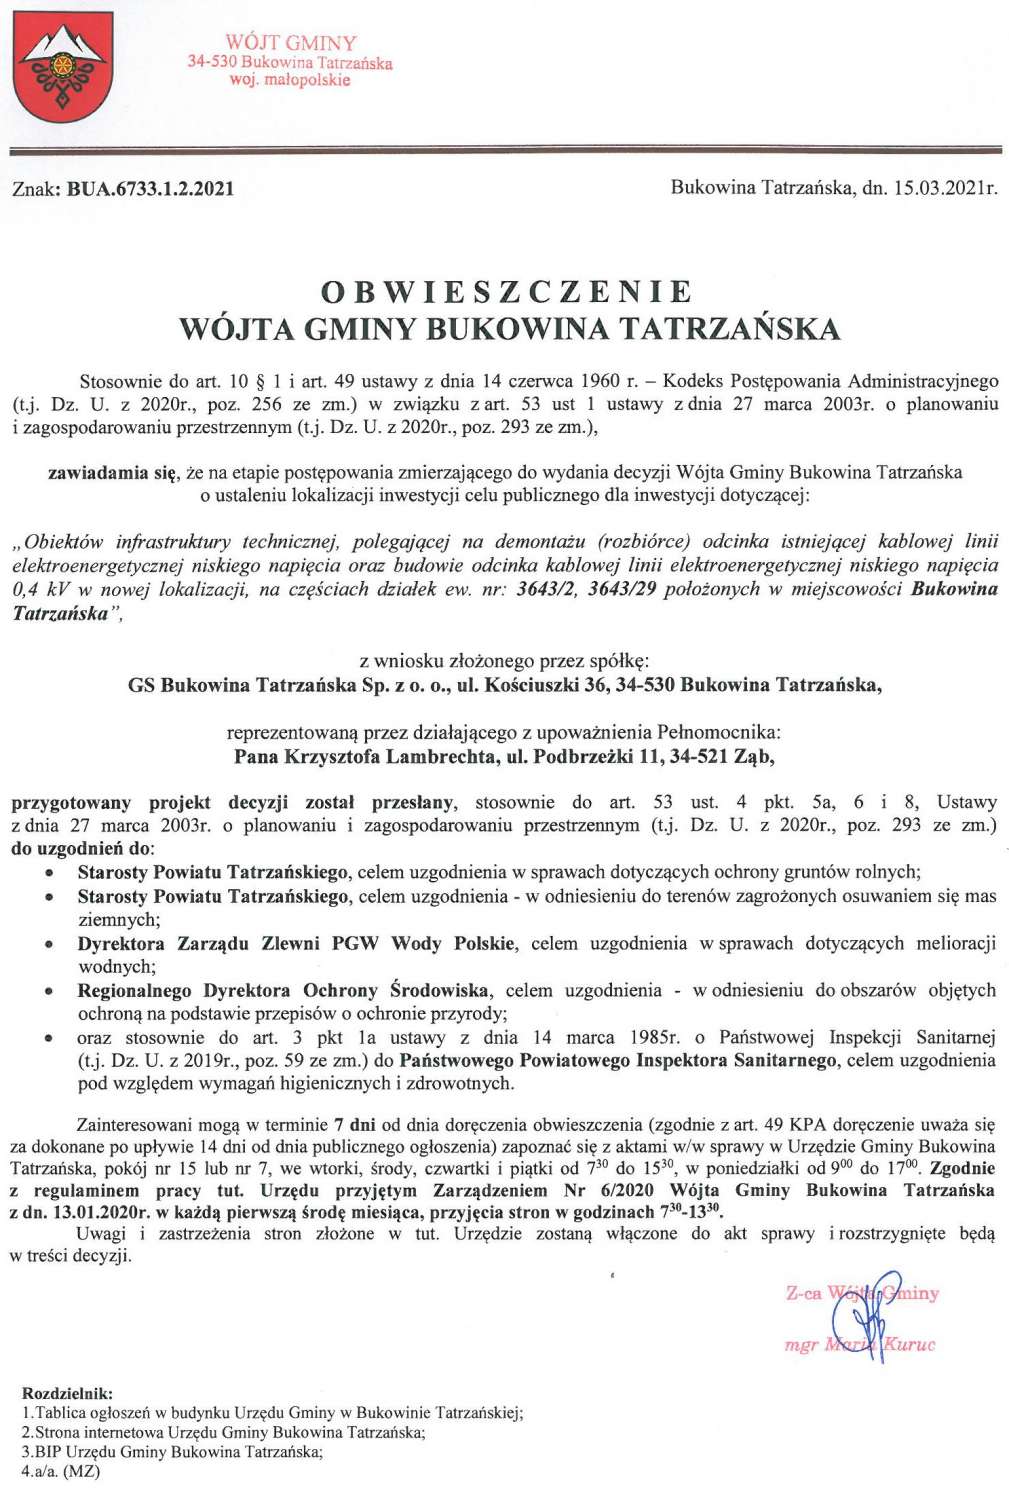 Obwieszczenie Wójta Gminy Bukowina Tatrzańska BUA 6733.1.2.2021